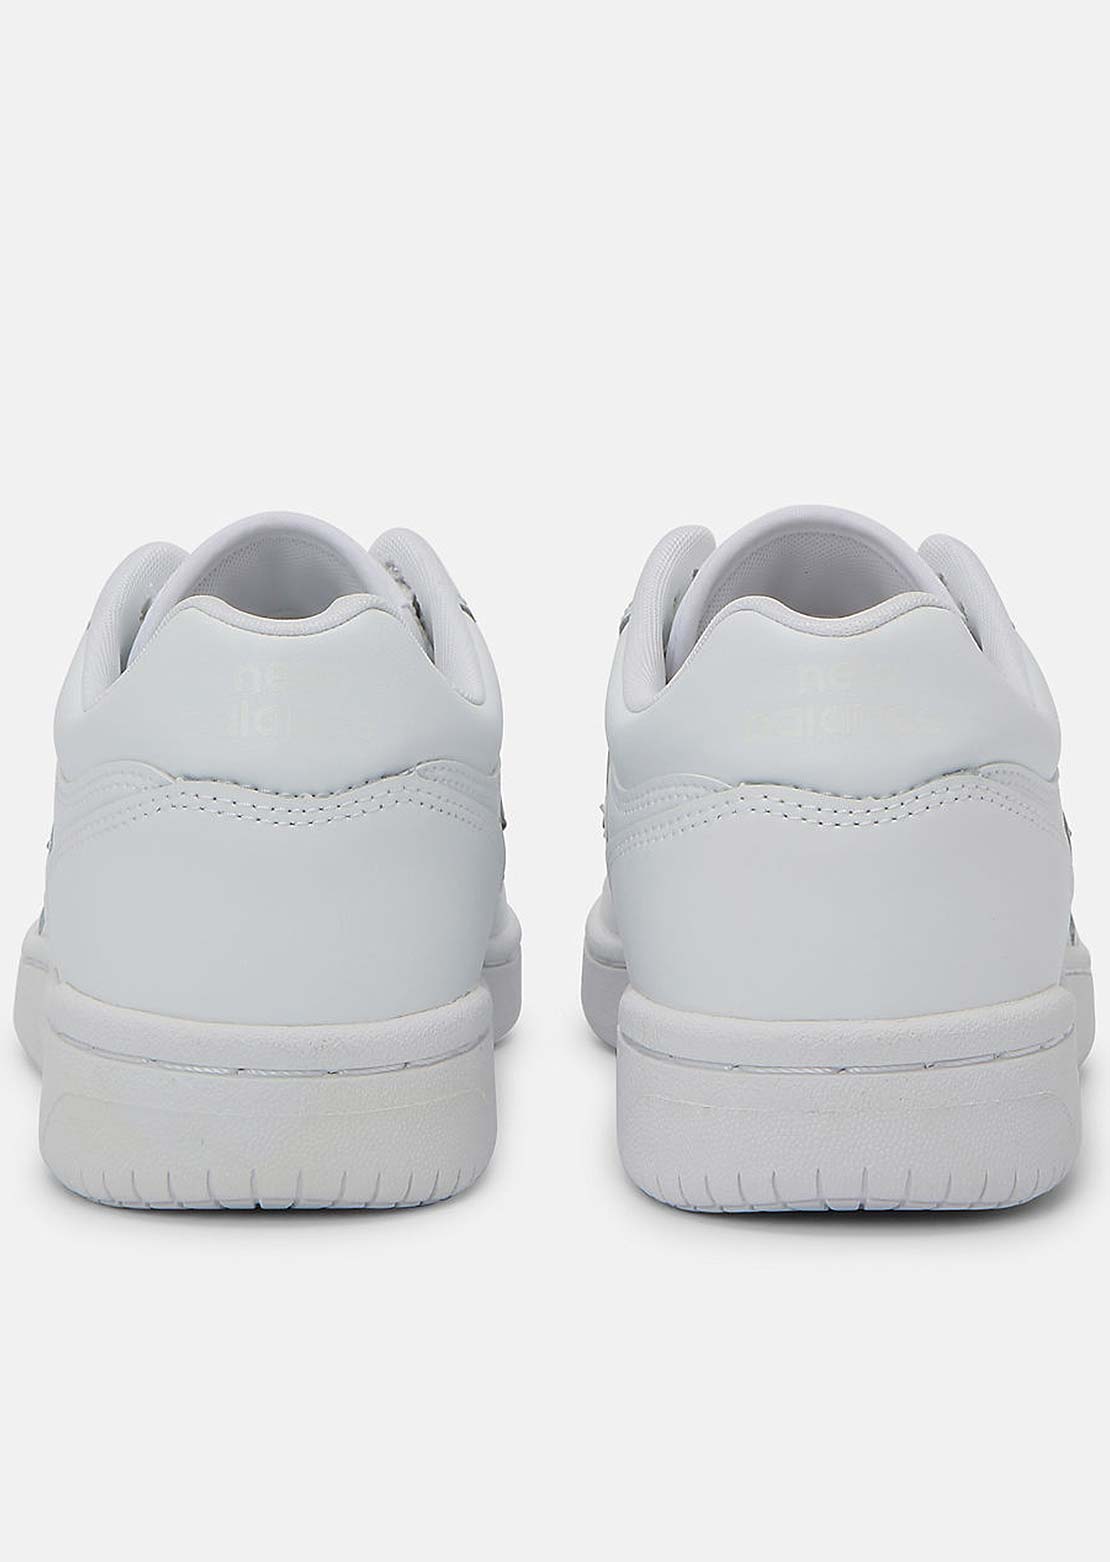 New Balance Unisex 480 Shoes White/White/White